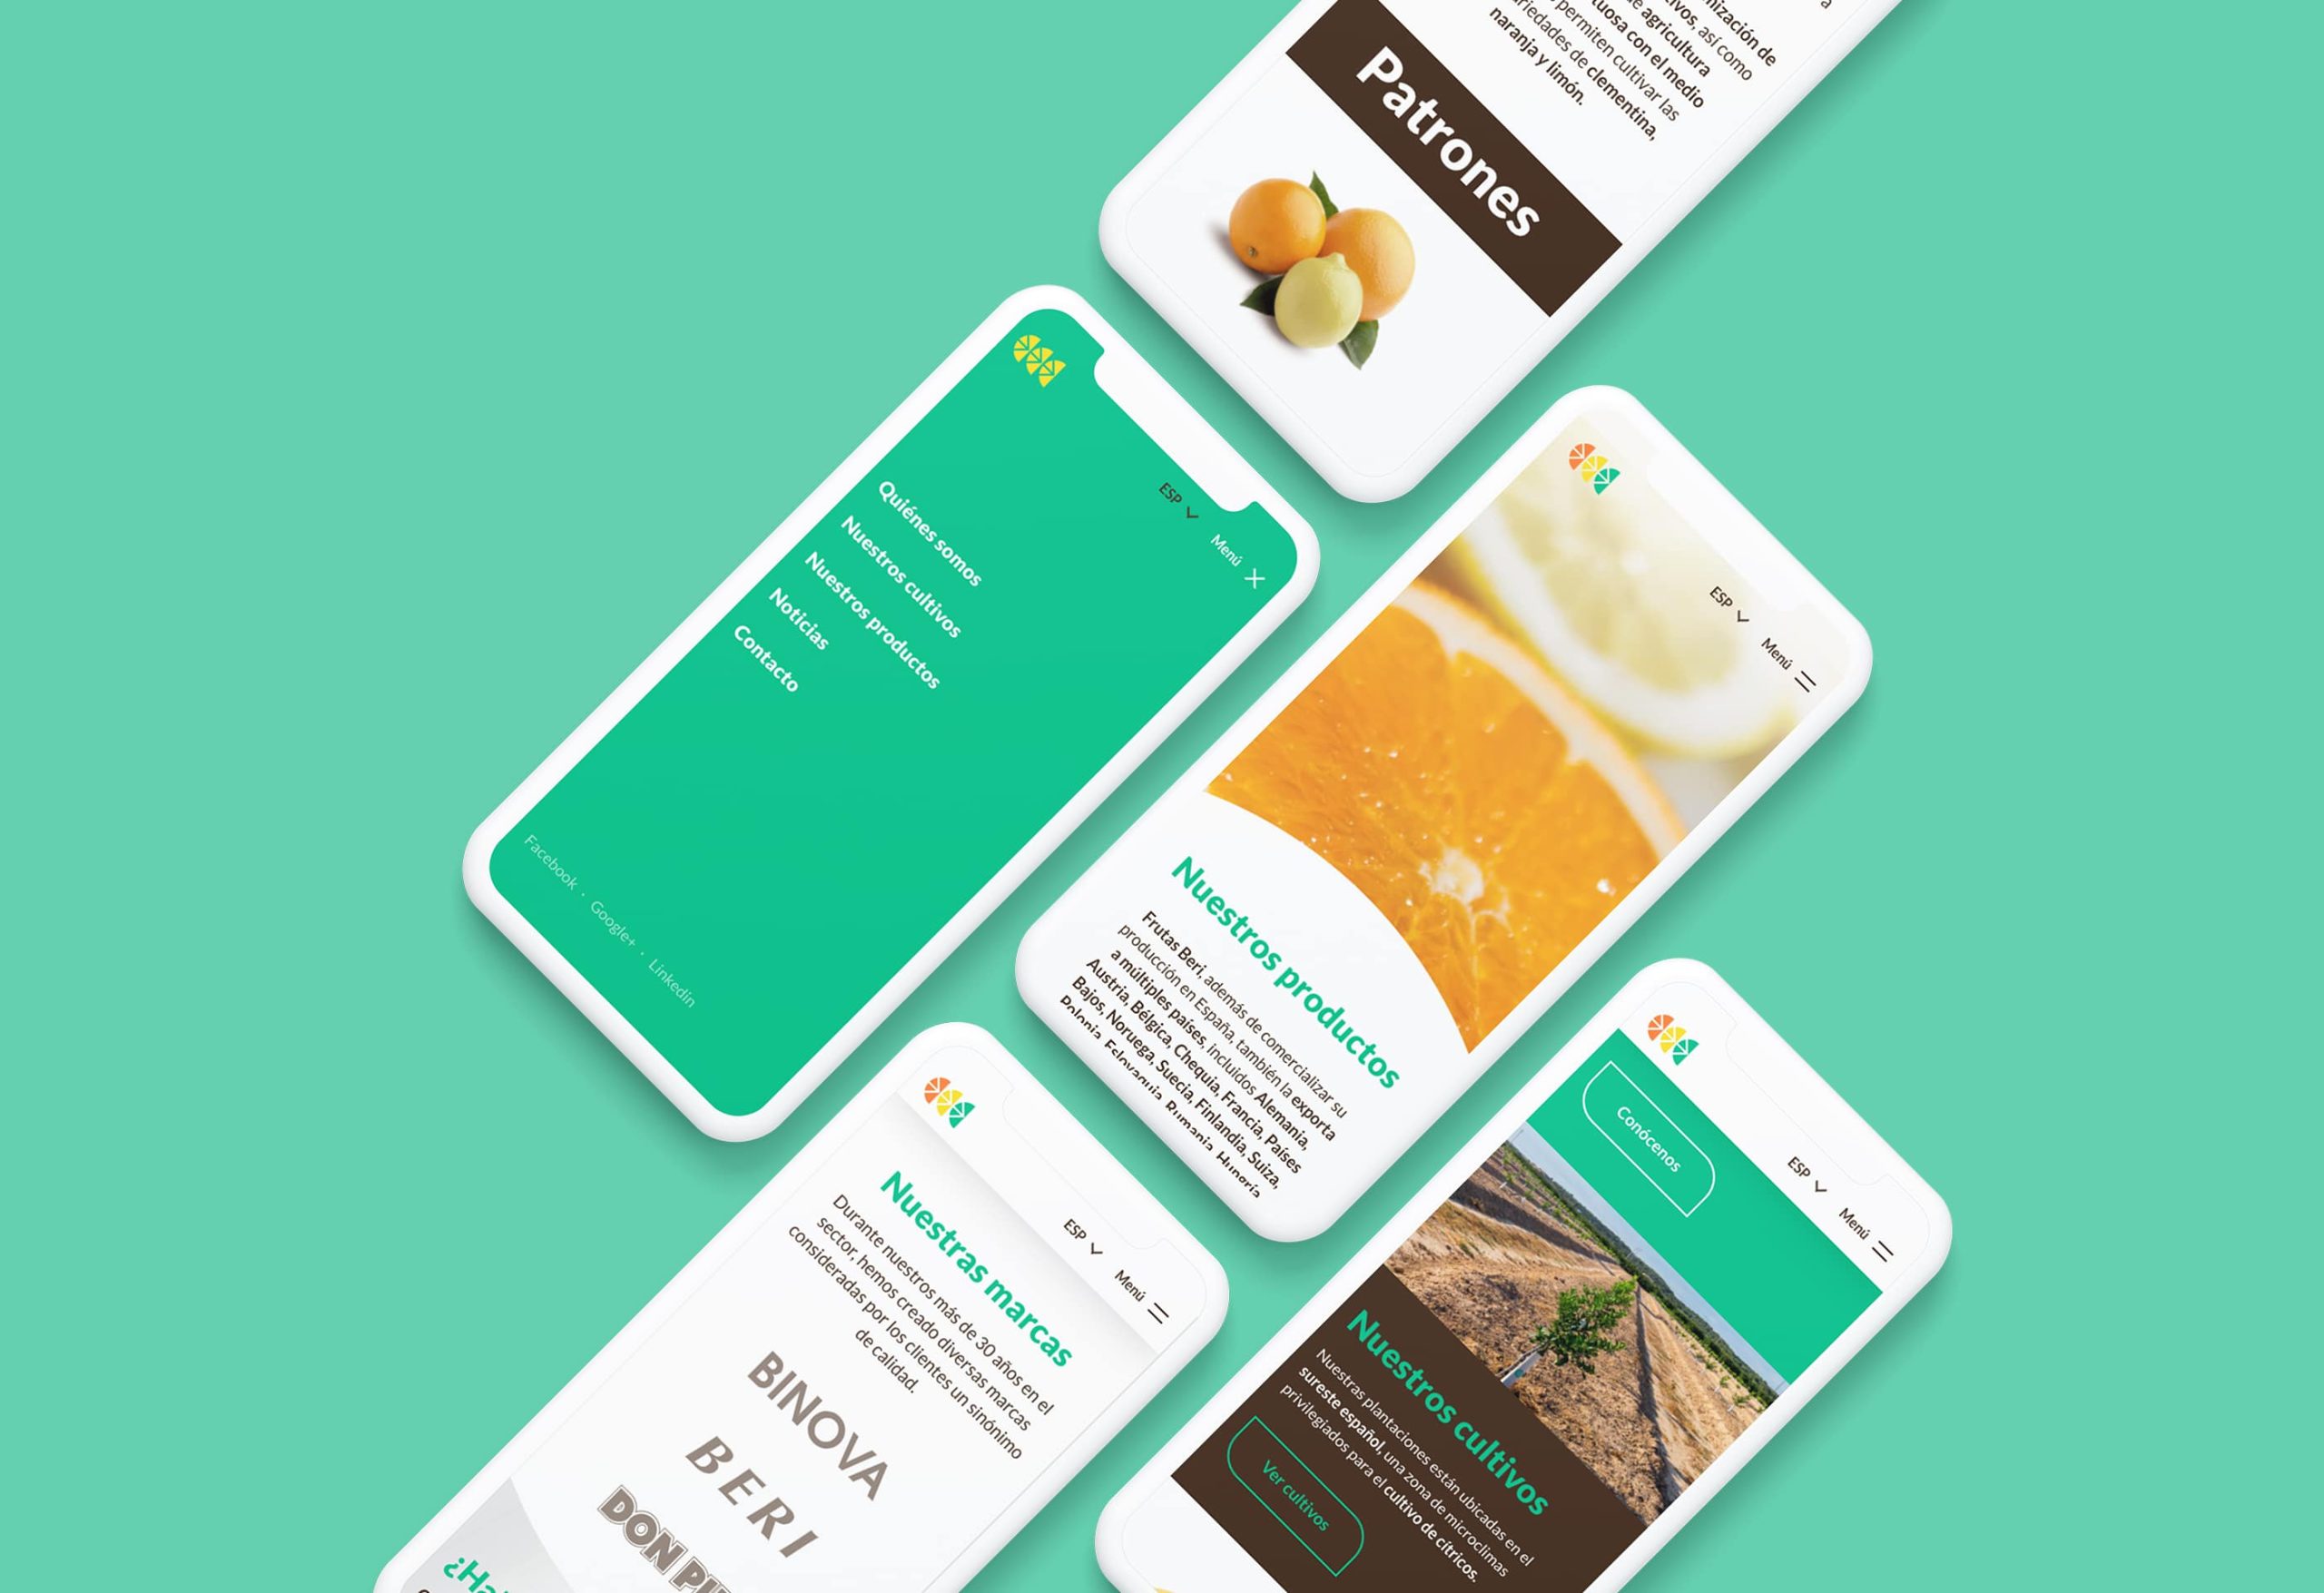 Diseño web realizado para Frutas Beri mostrado en varios móviles